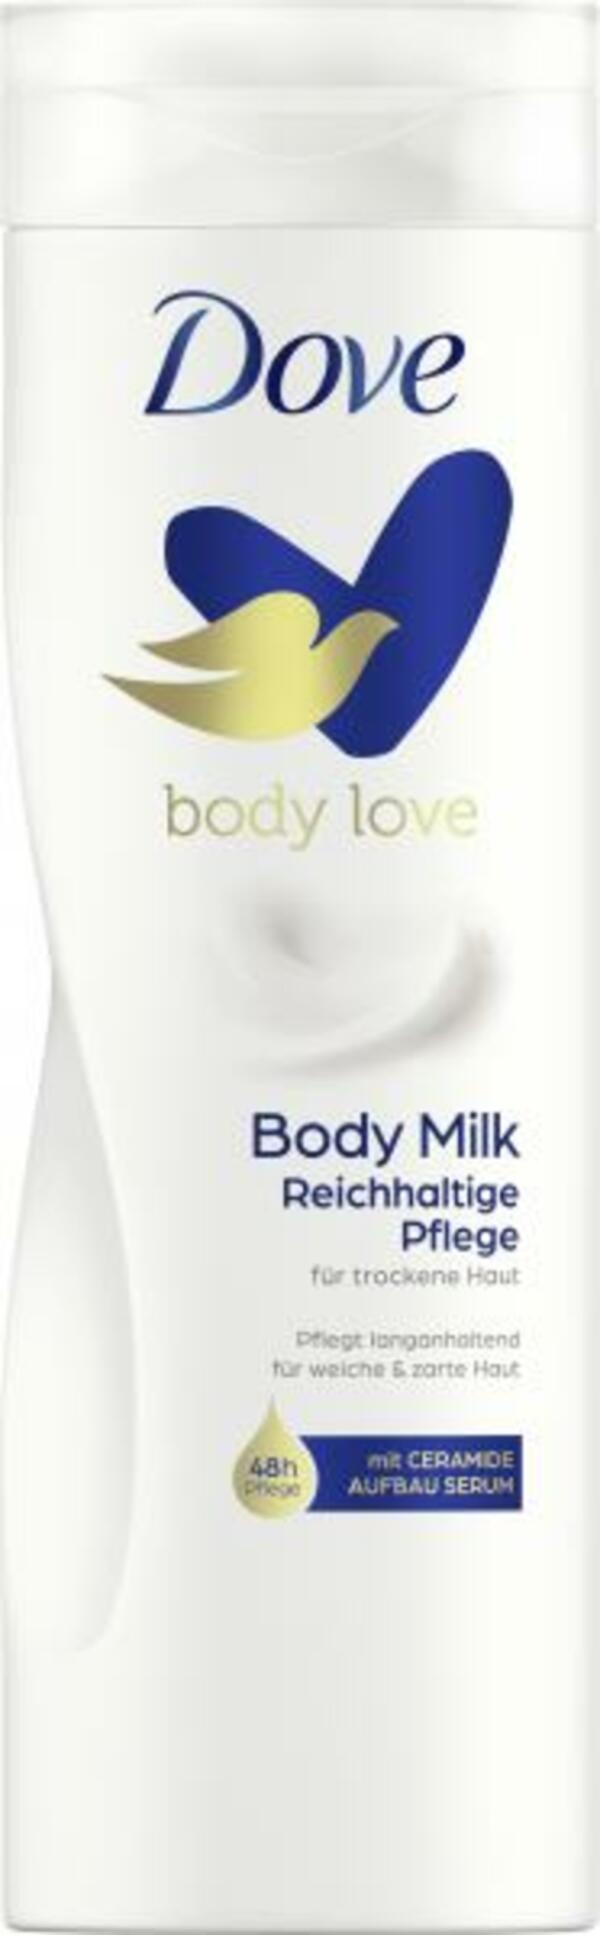 Bild 1 von Dove Body love Body Milk Reichhaltige Pflege